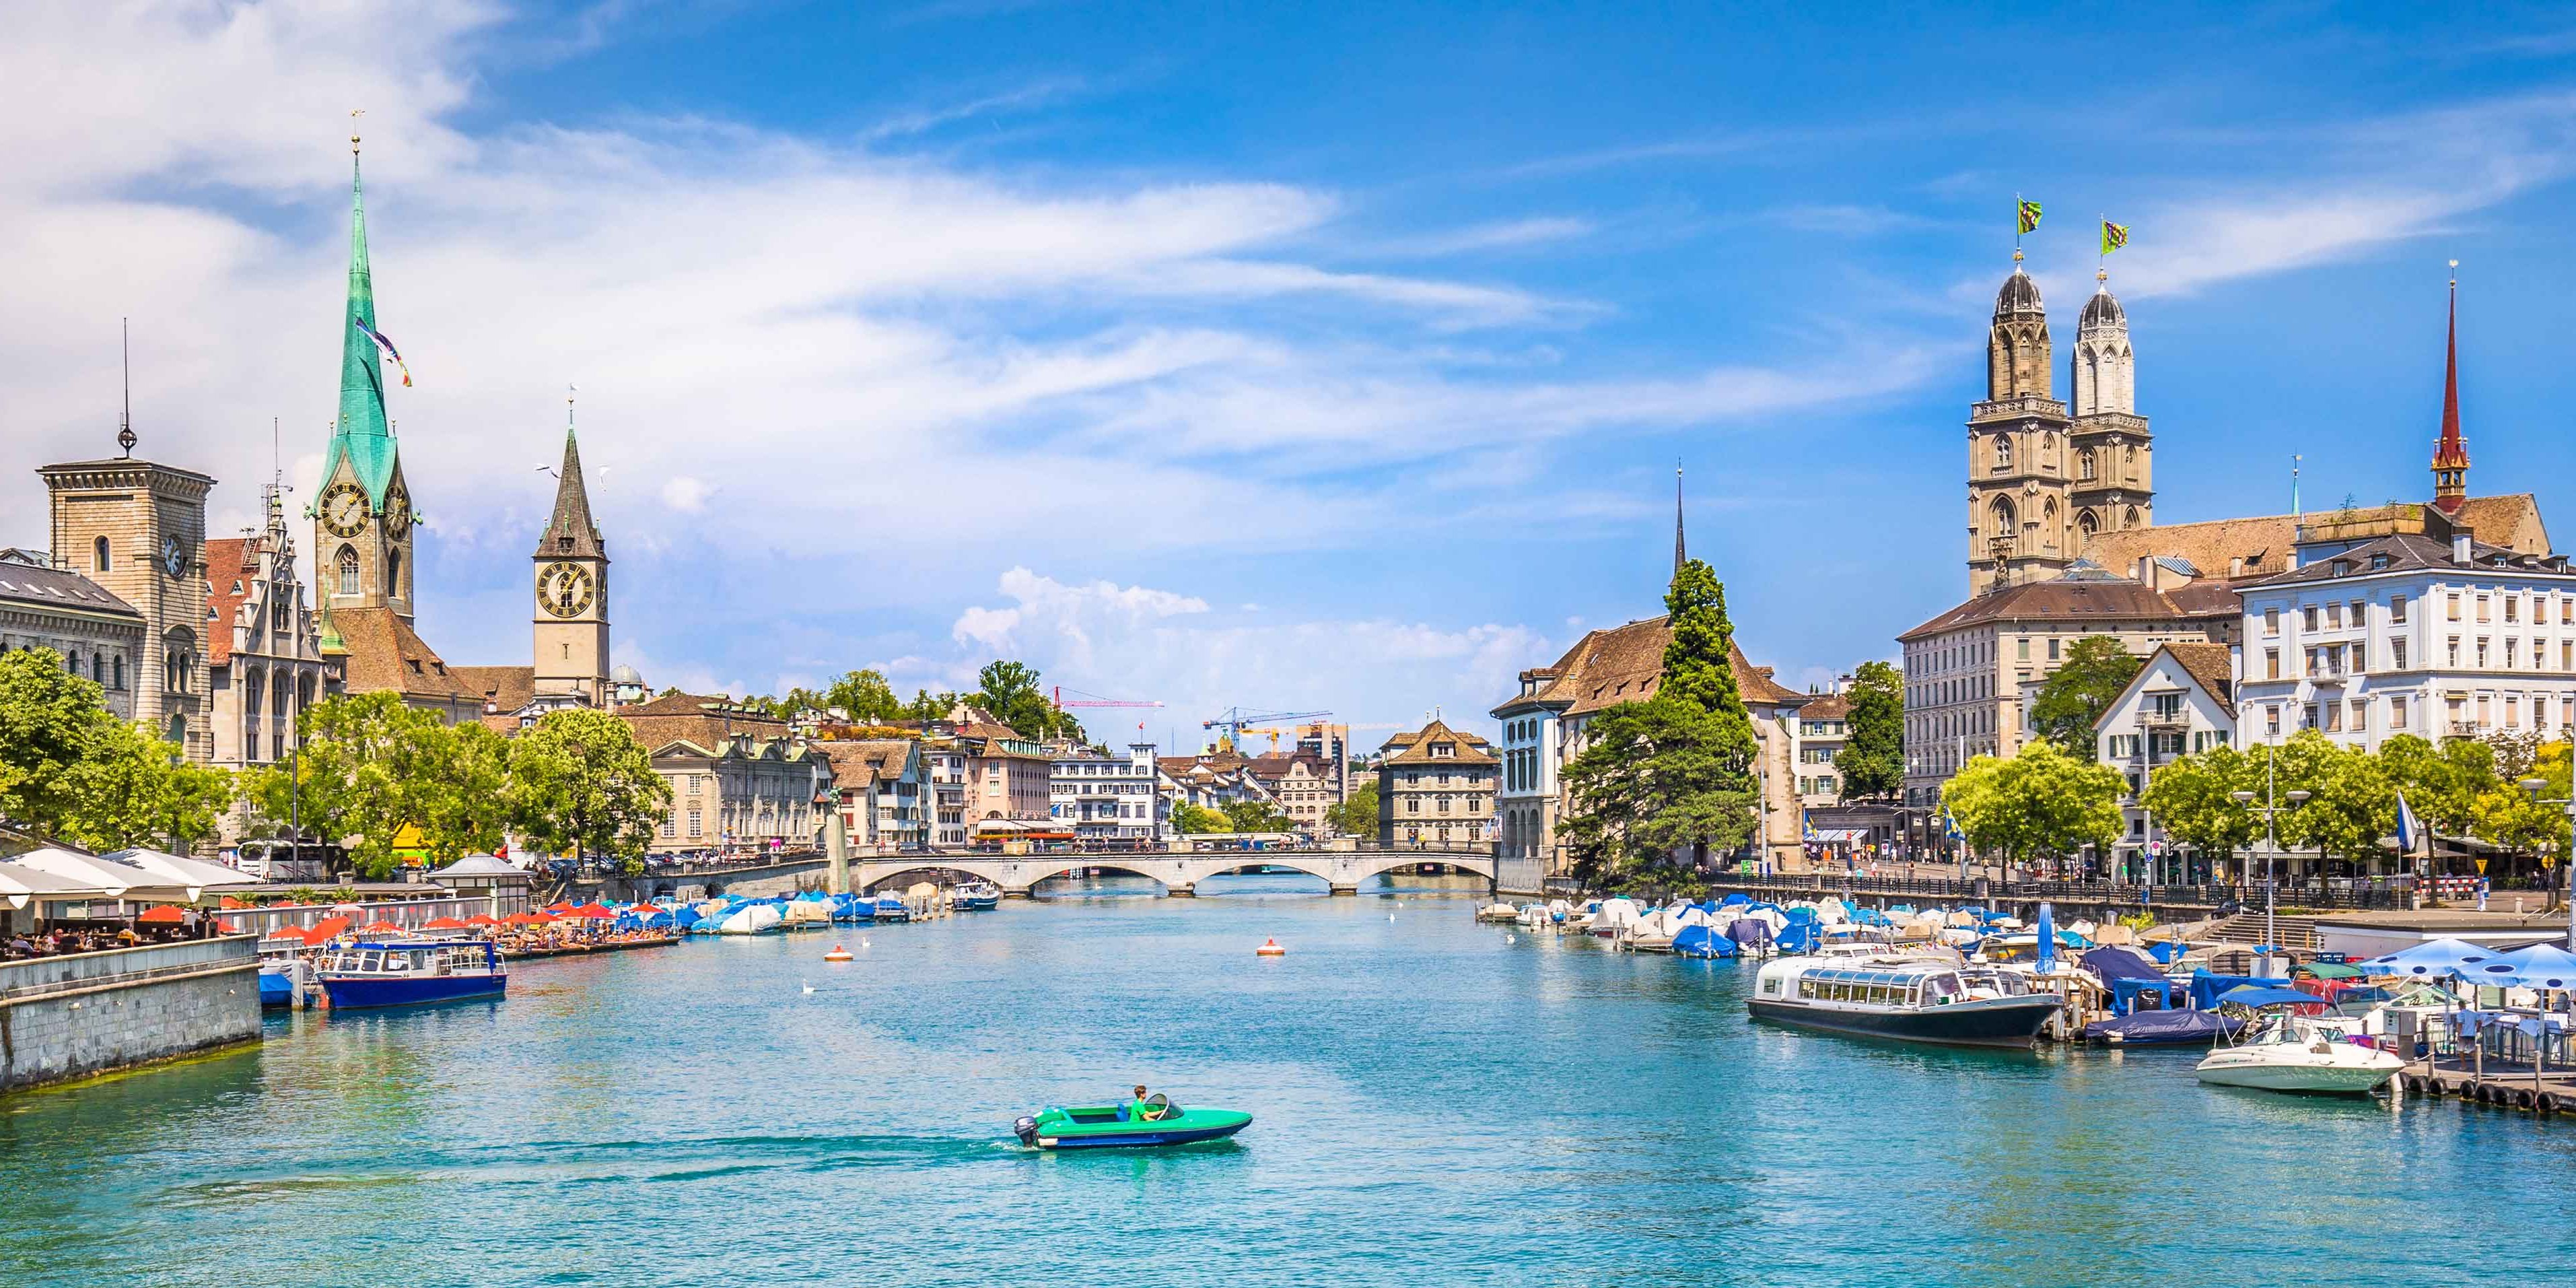 16 Best Things to Do in Zurich Switzerland - 16best.net